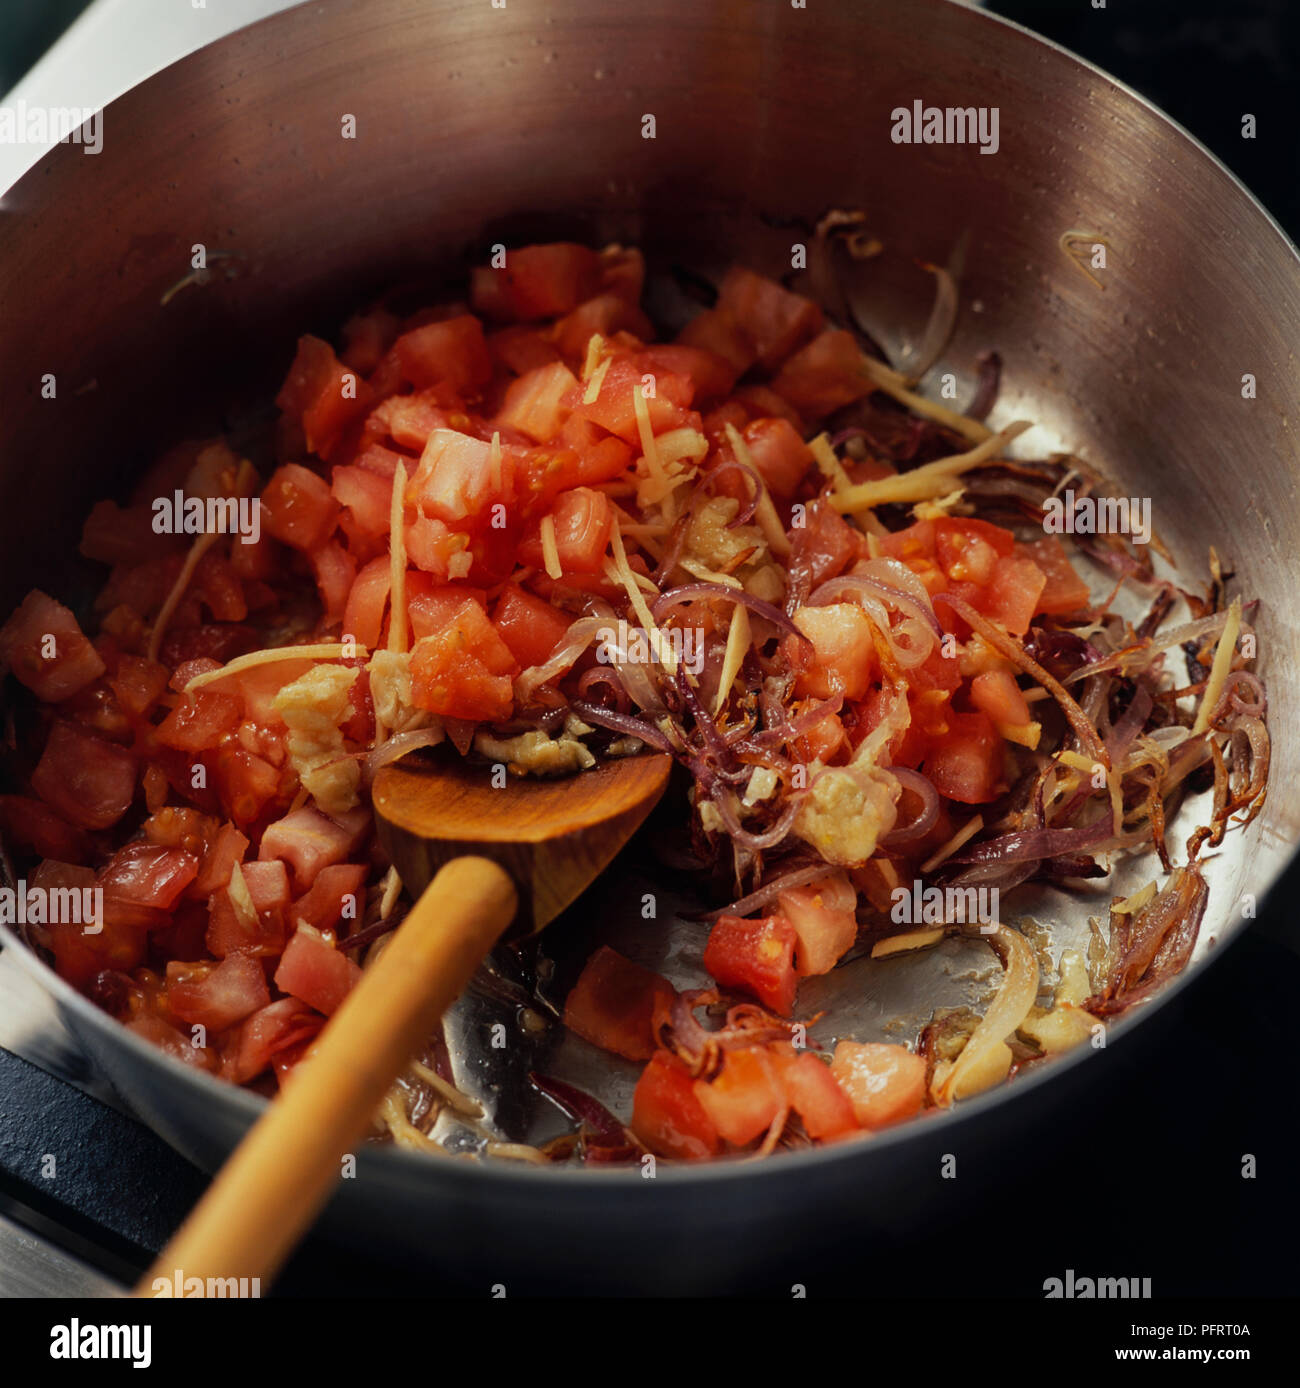 Massalla pakistanais à frire les oignons, les tomates, l'ail et le gingembre dans l'huile chaude dans une casserole avec une cuillère de bois Banque D'Images